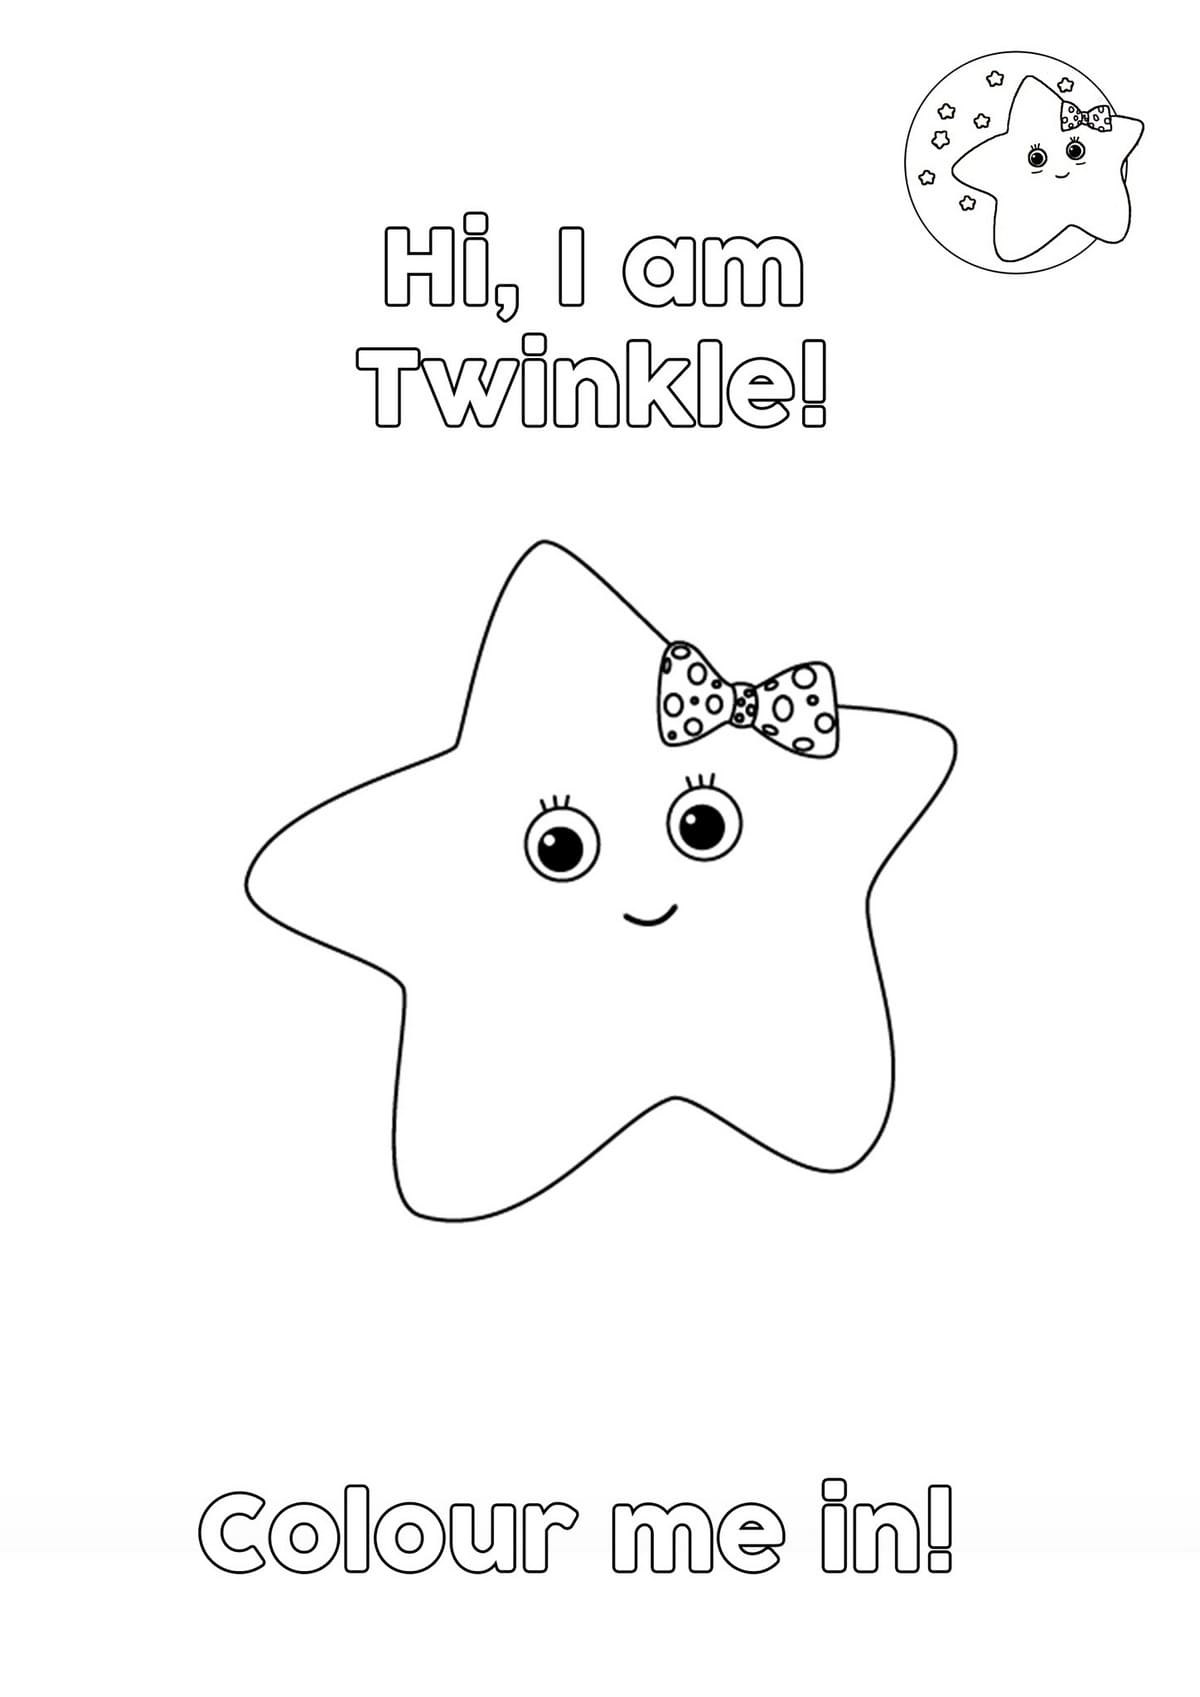 Ausmalbild Little Baby Bum Twinkie